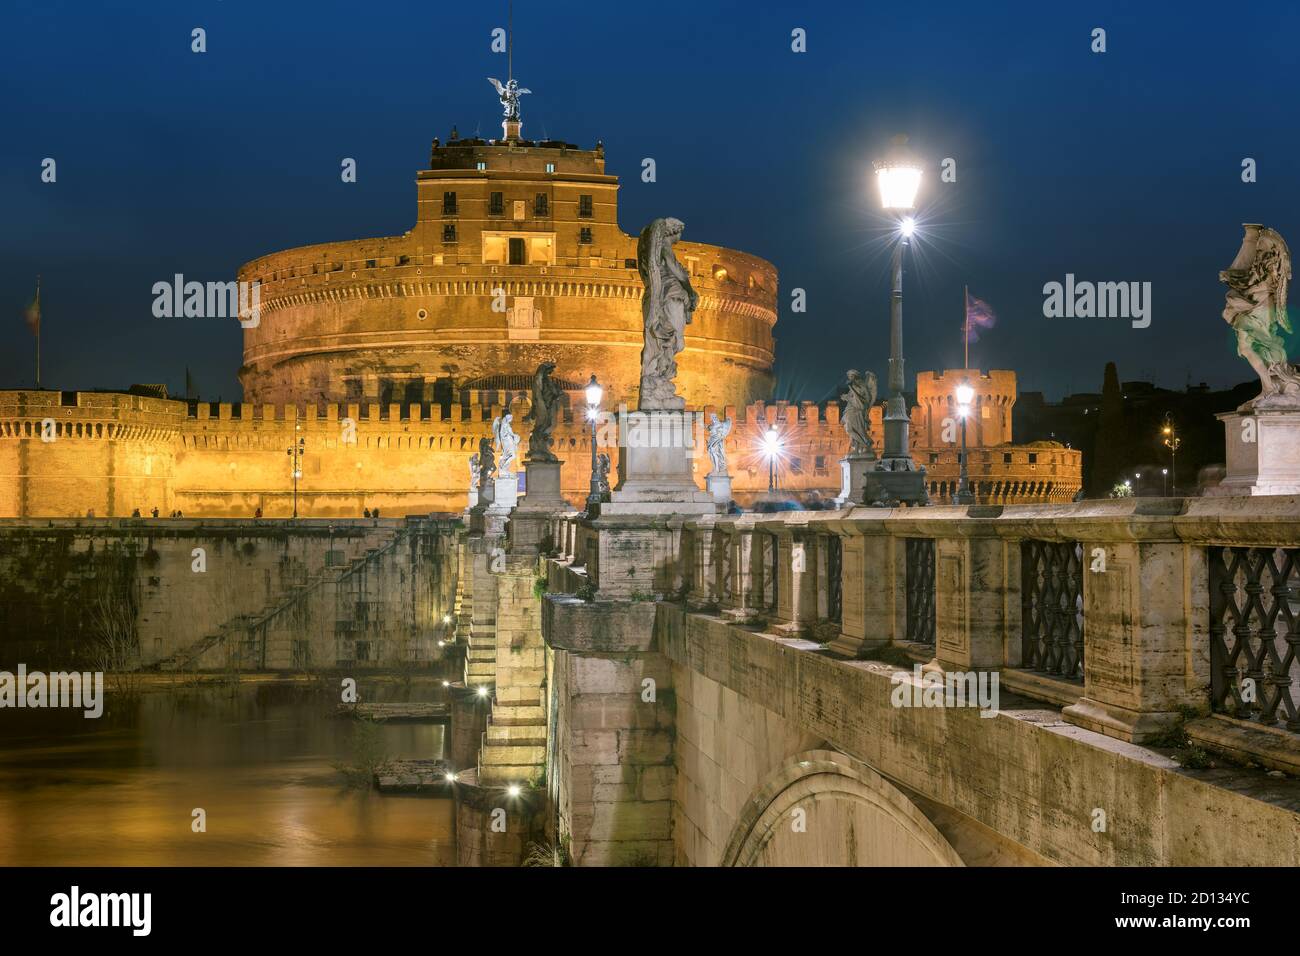 Vue nocturne de Castel Sant'Angelo, Rome, Italie Banque D'Images